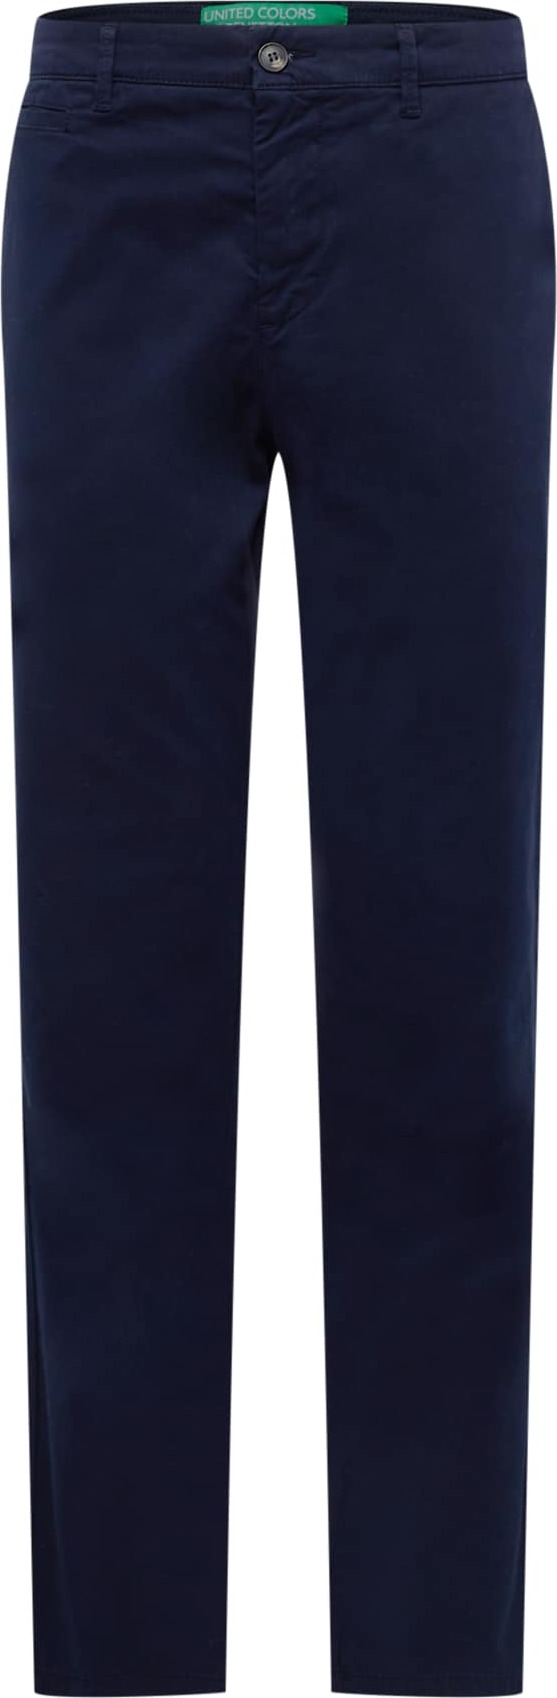 UNITED COLORS OF BENETTON Chino kalhoty námořnická modř